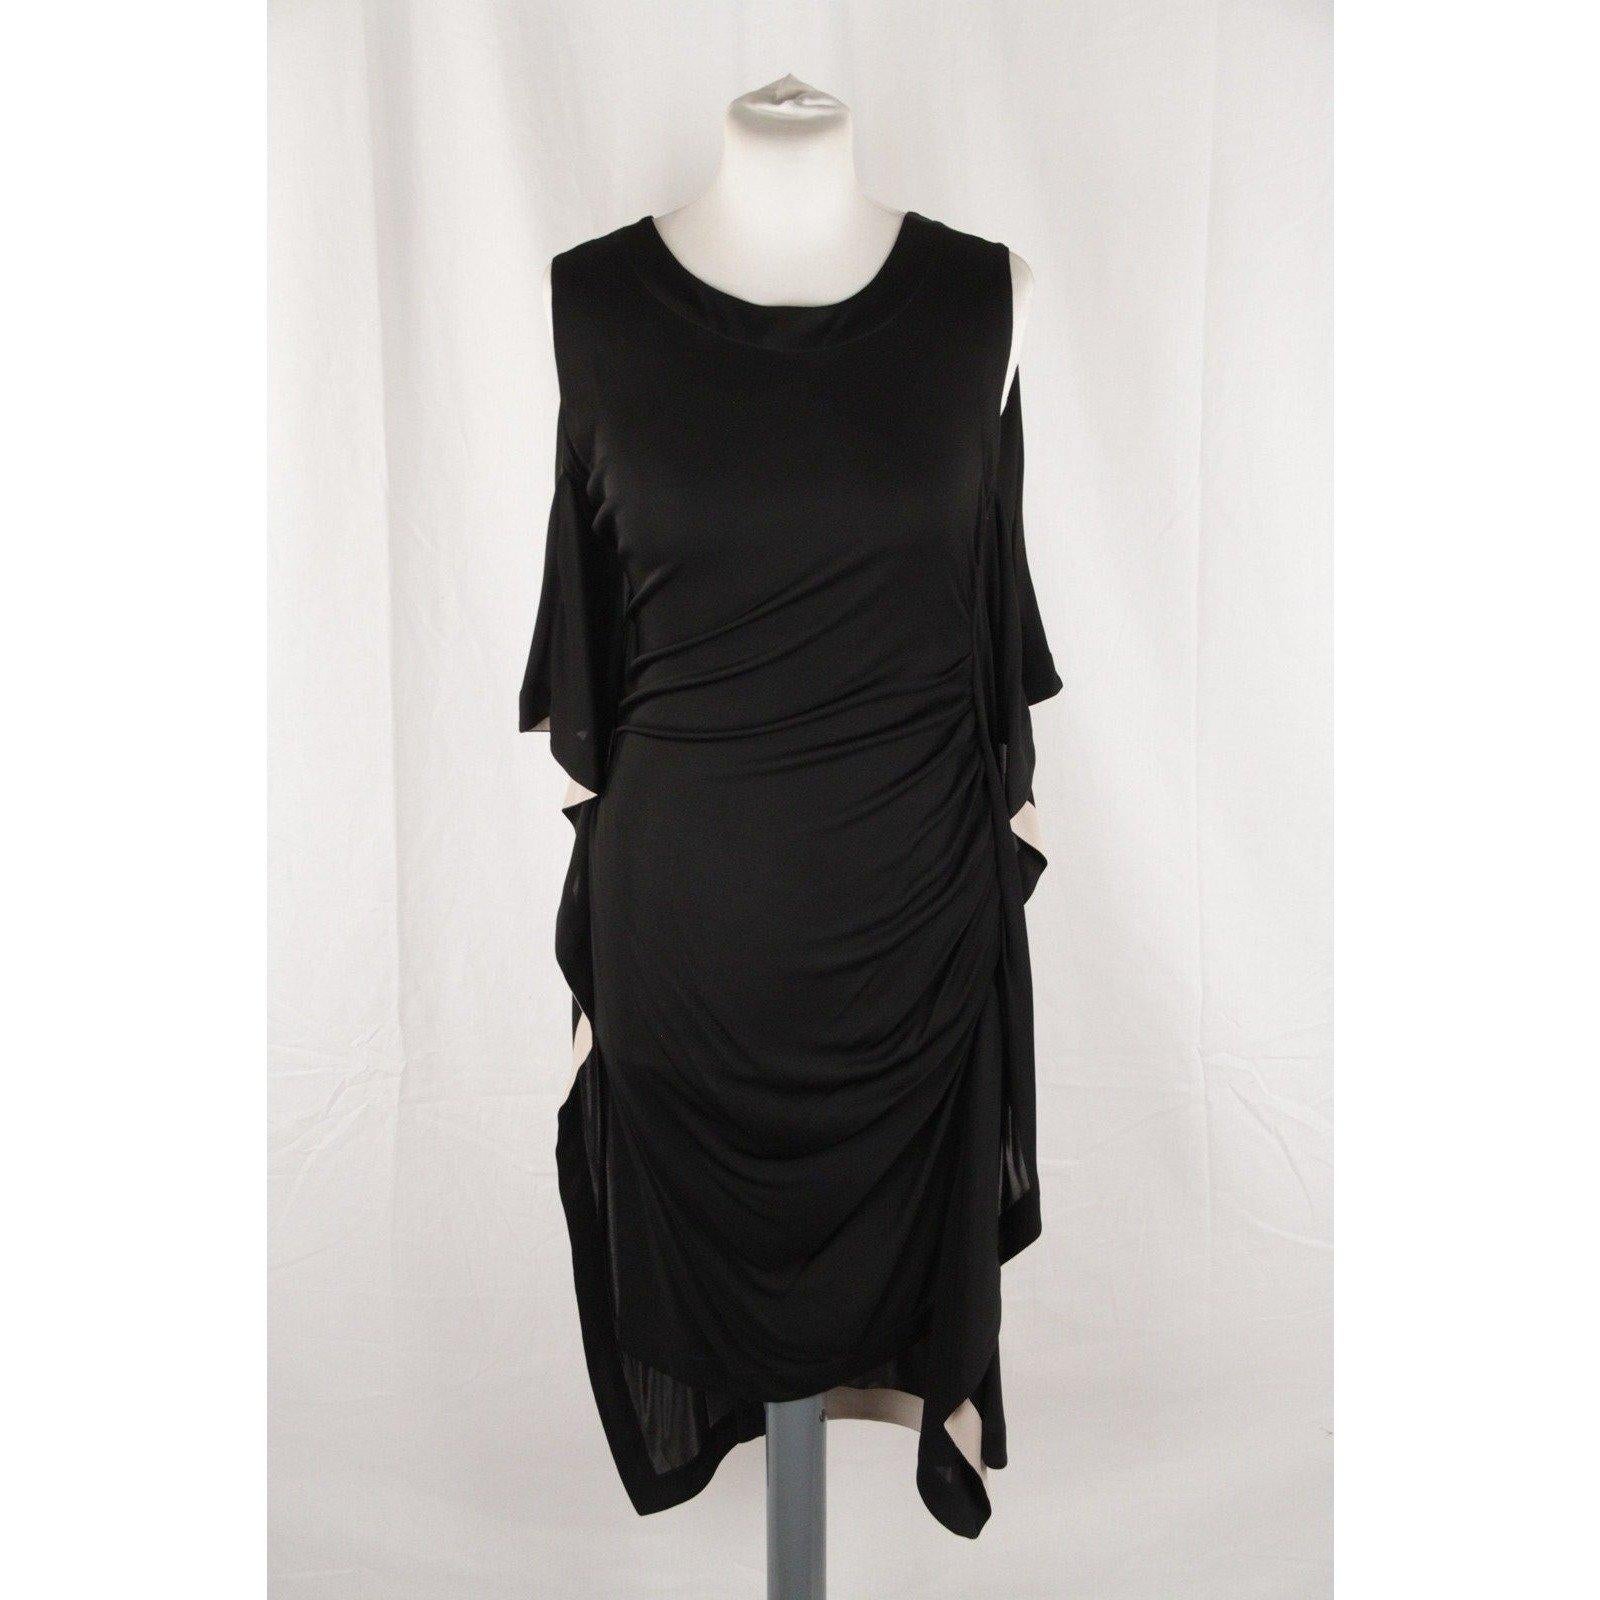 Vionnet Black Silky Sleeveless Dress Knee Lenght Size S 1